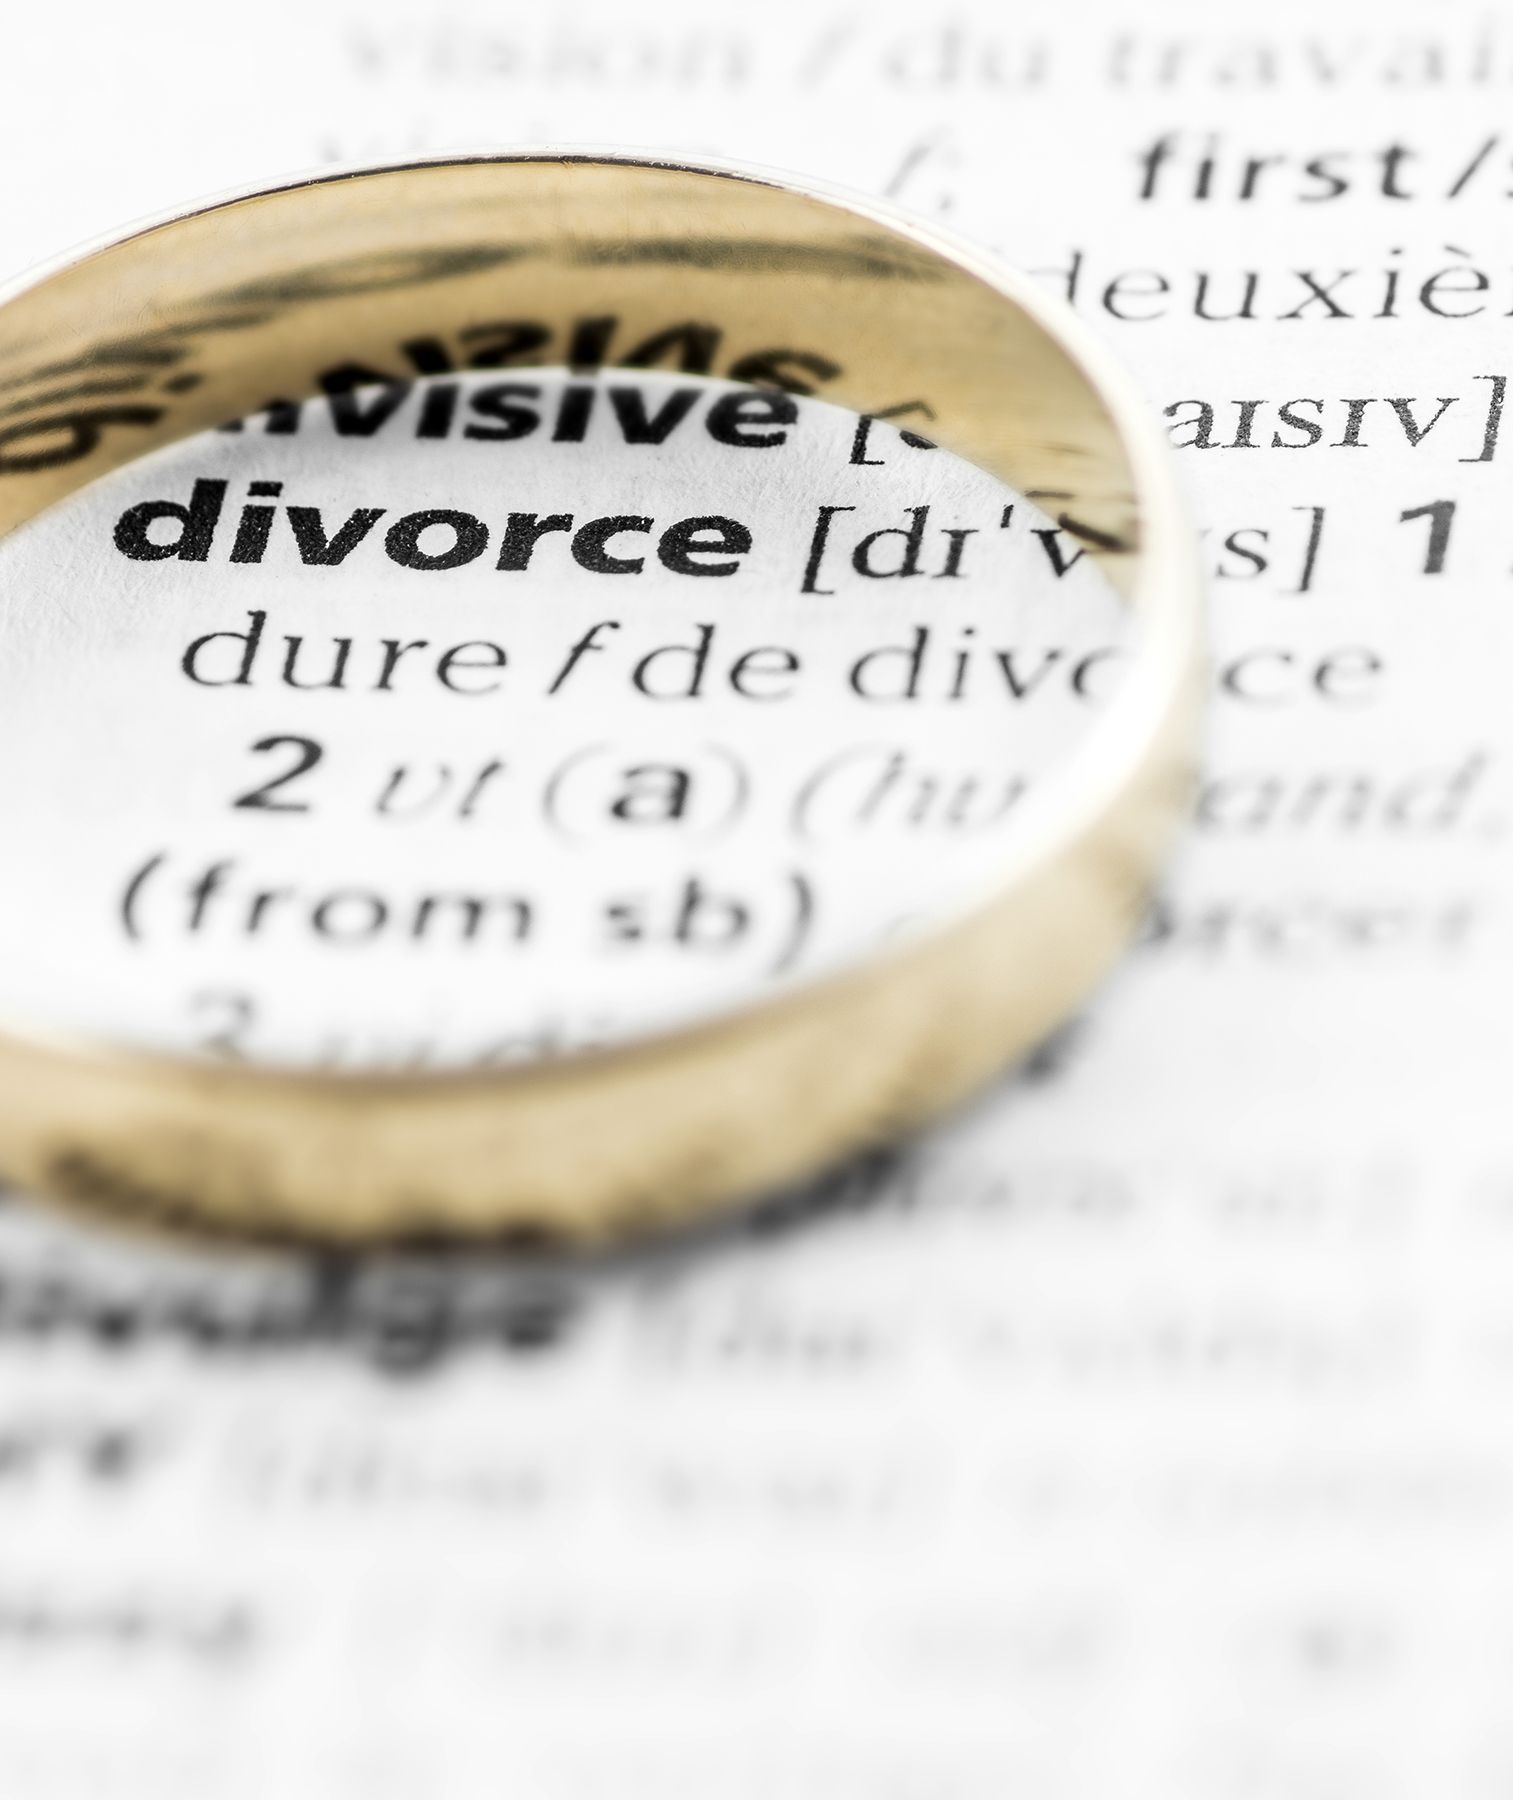 32 consigli totalmente onesti sul divorzio da donne che ci sono state